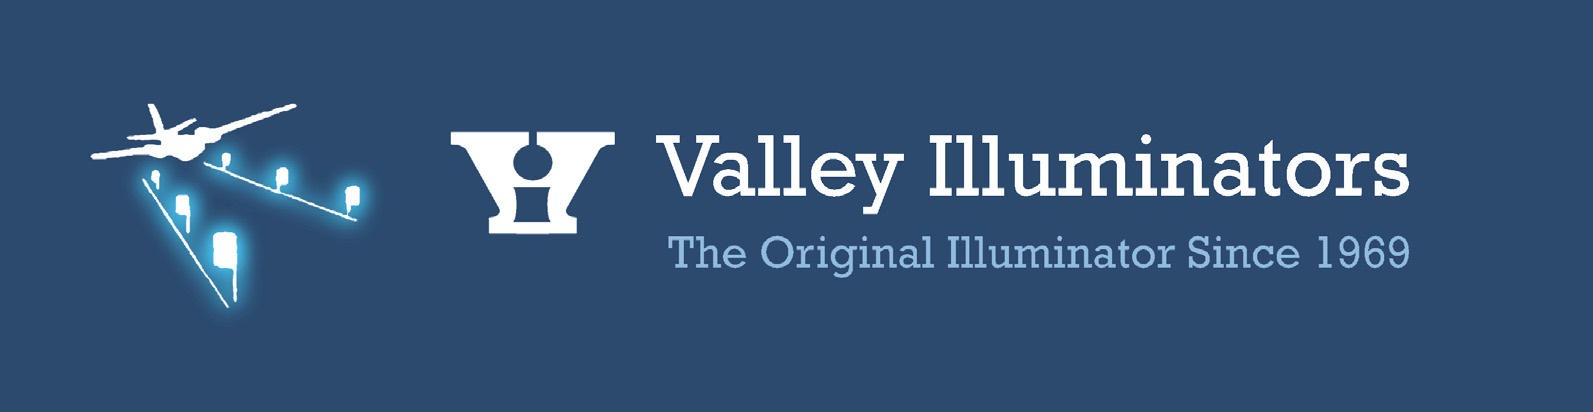 Valley Illuminators main logo